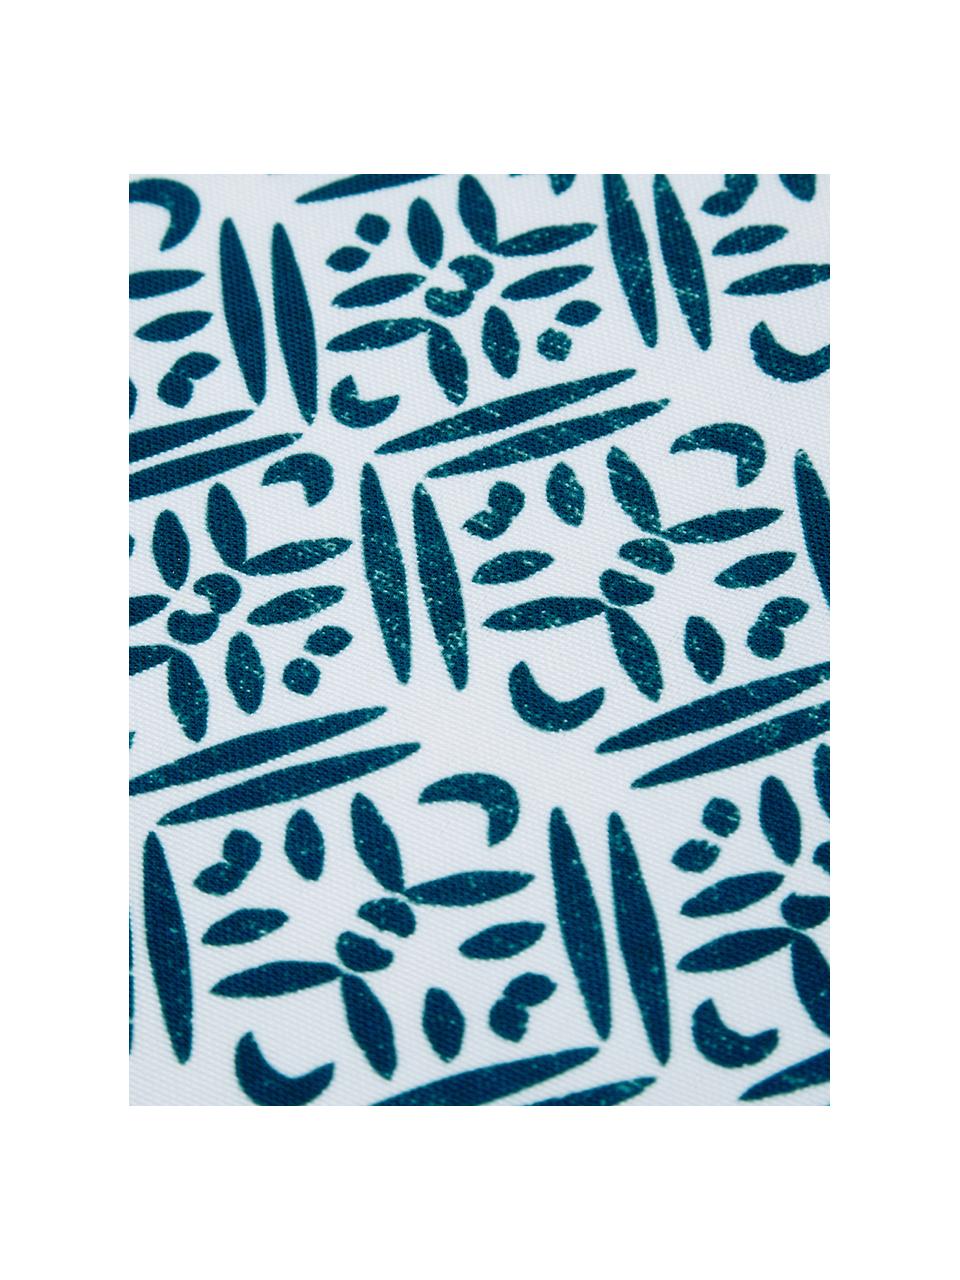 Manteles individuales impermeables de plástico Fishbone, 2 uds., Poliéster, Blanco, tonos azules, An 33 x L 48 cm